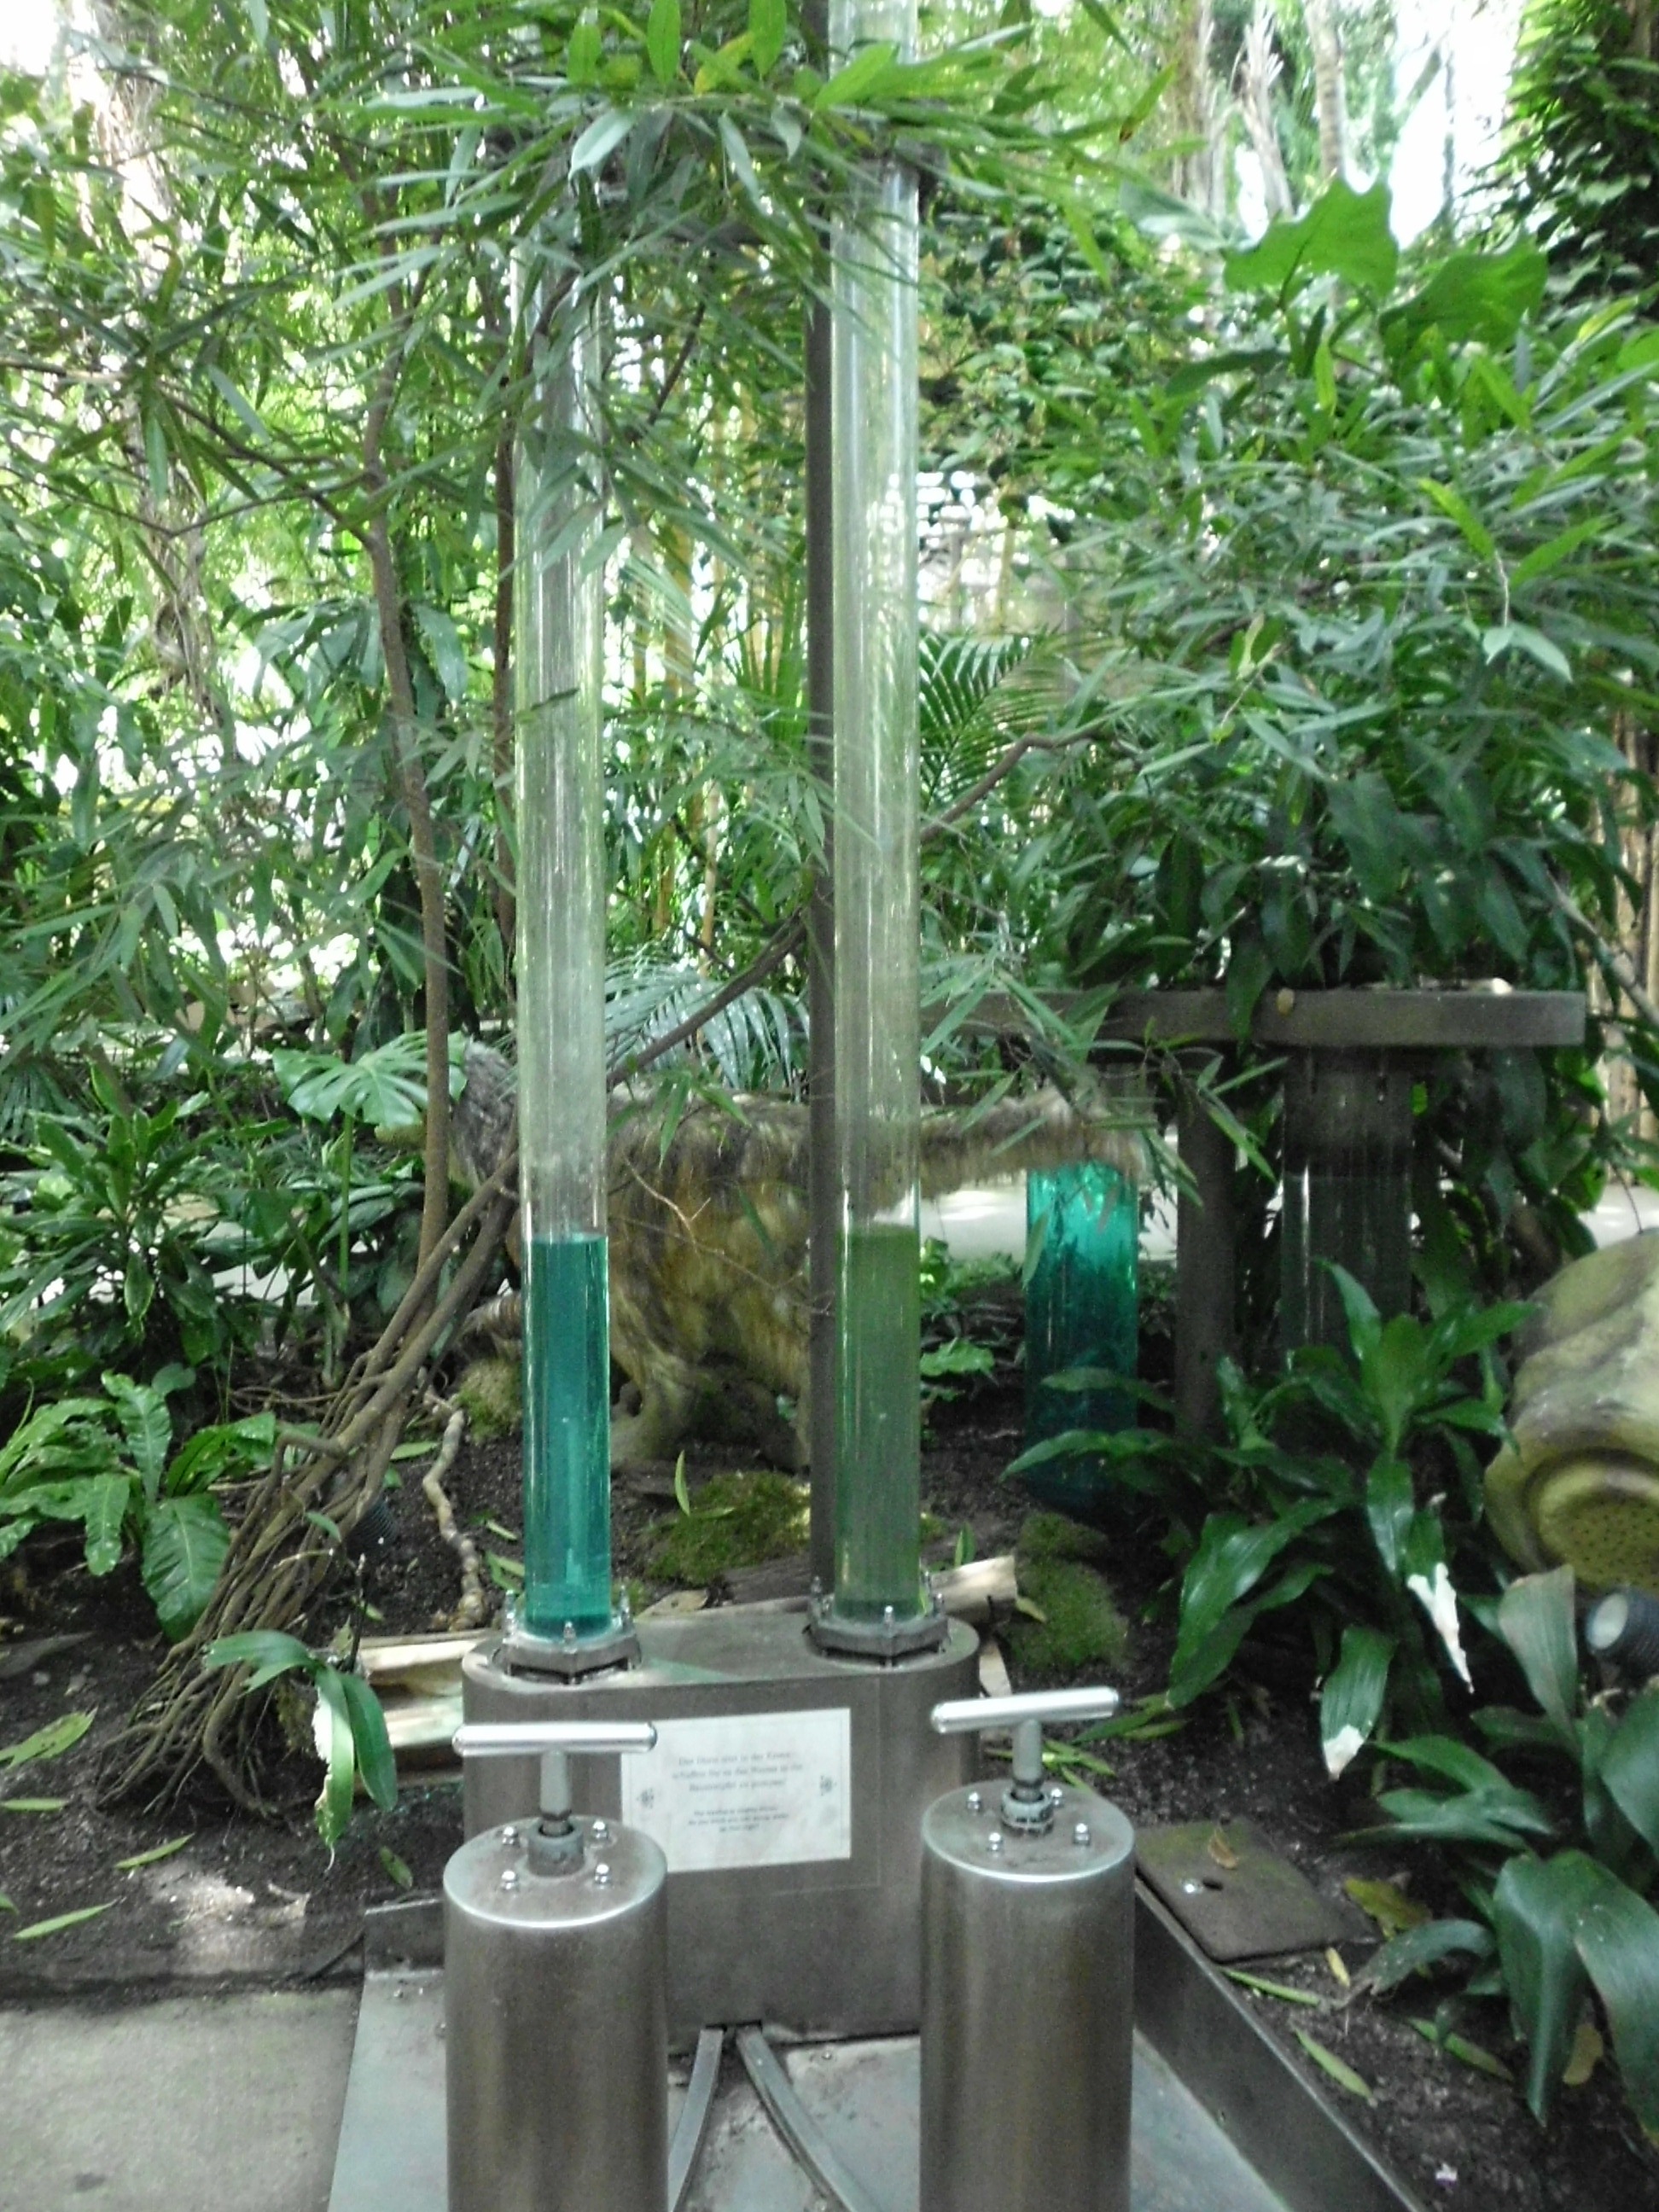 Pumpstation für die Bäume